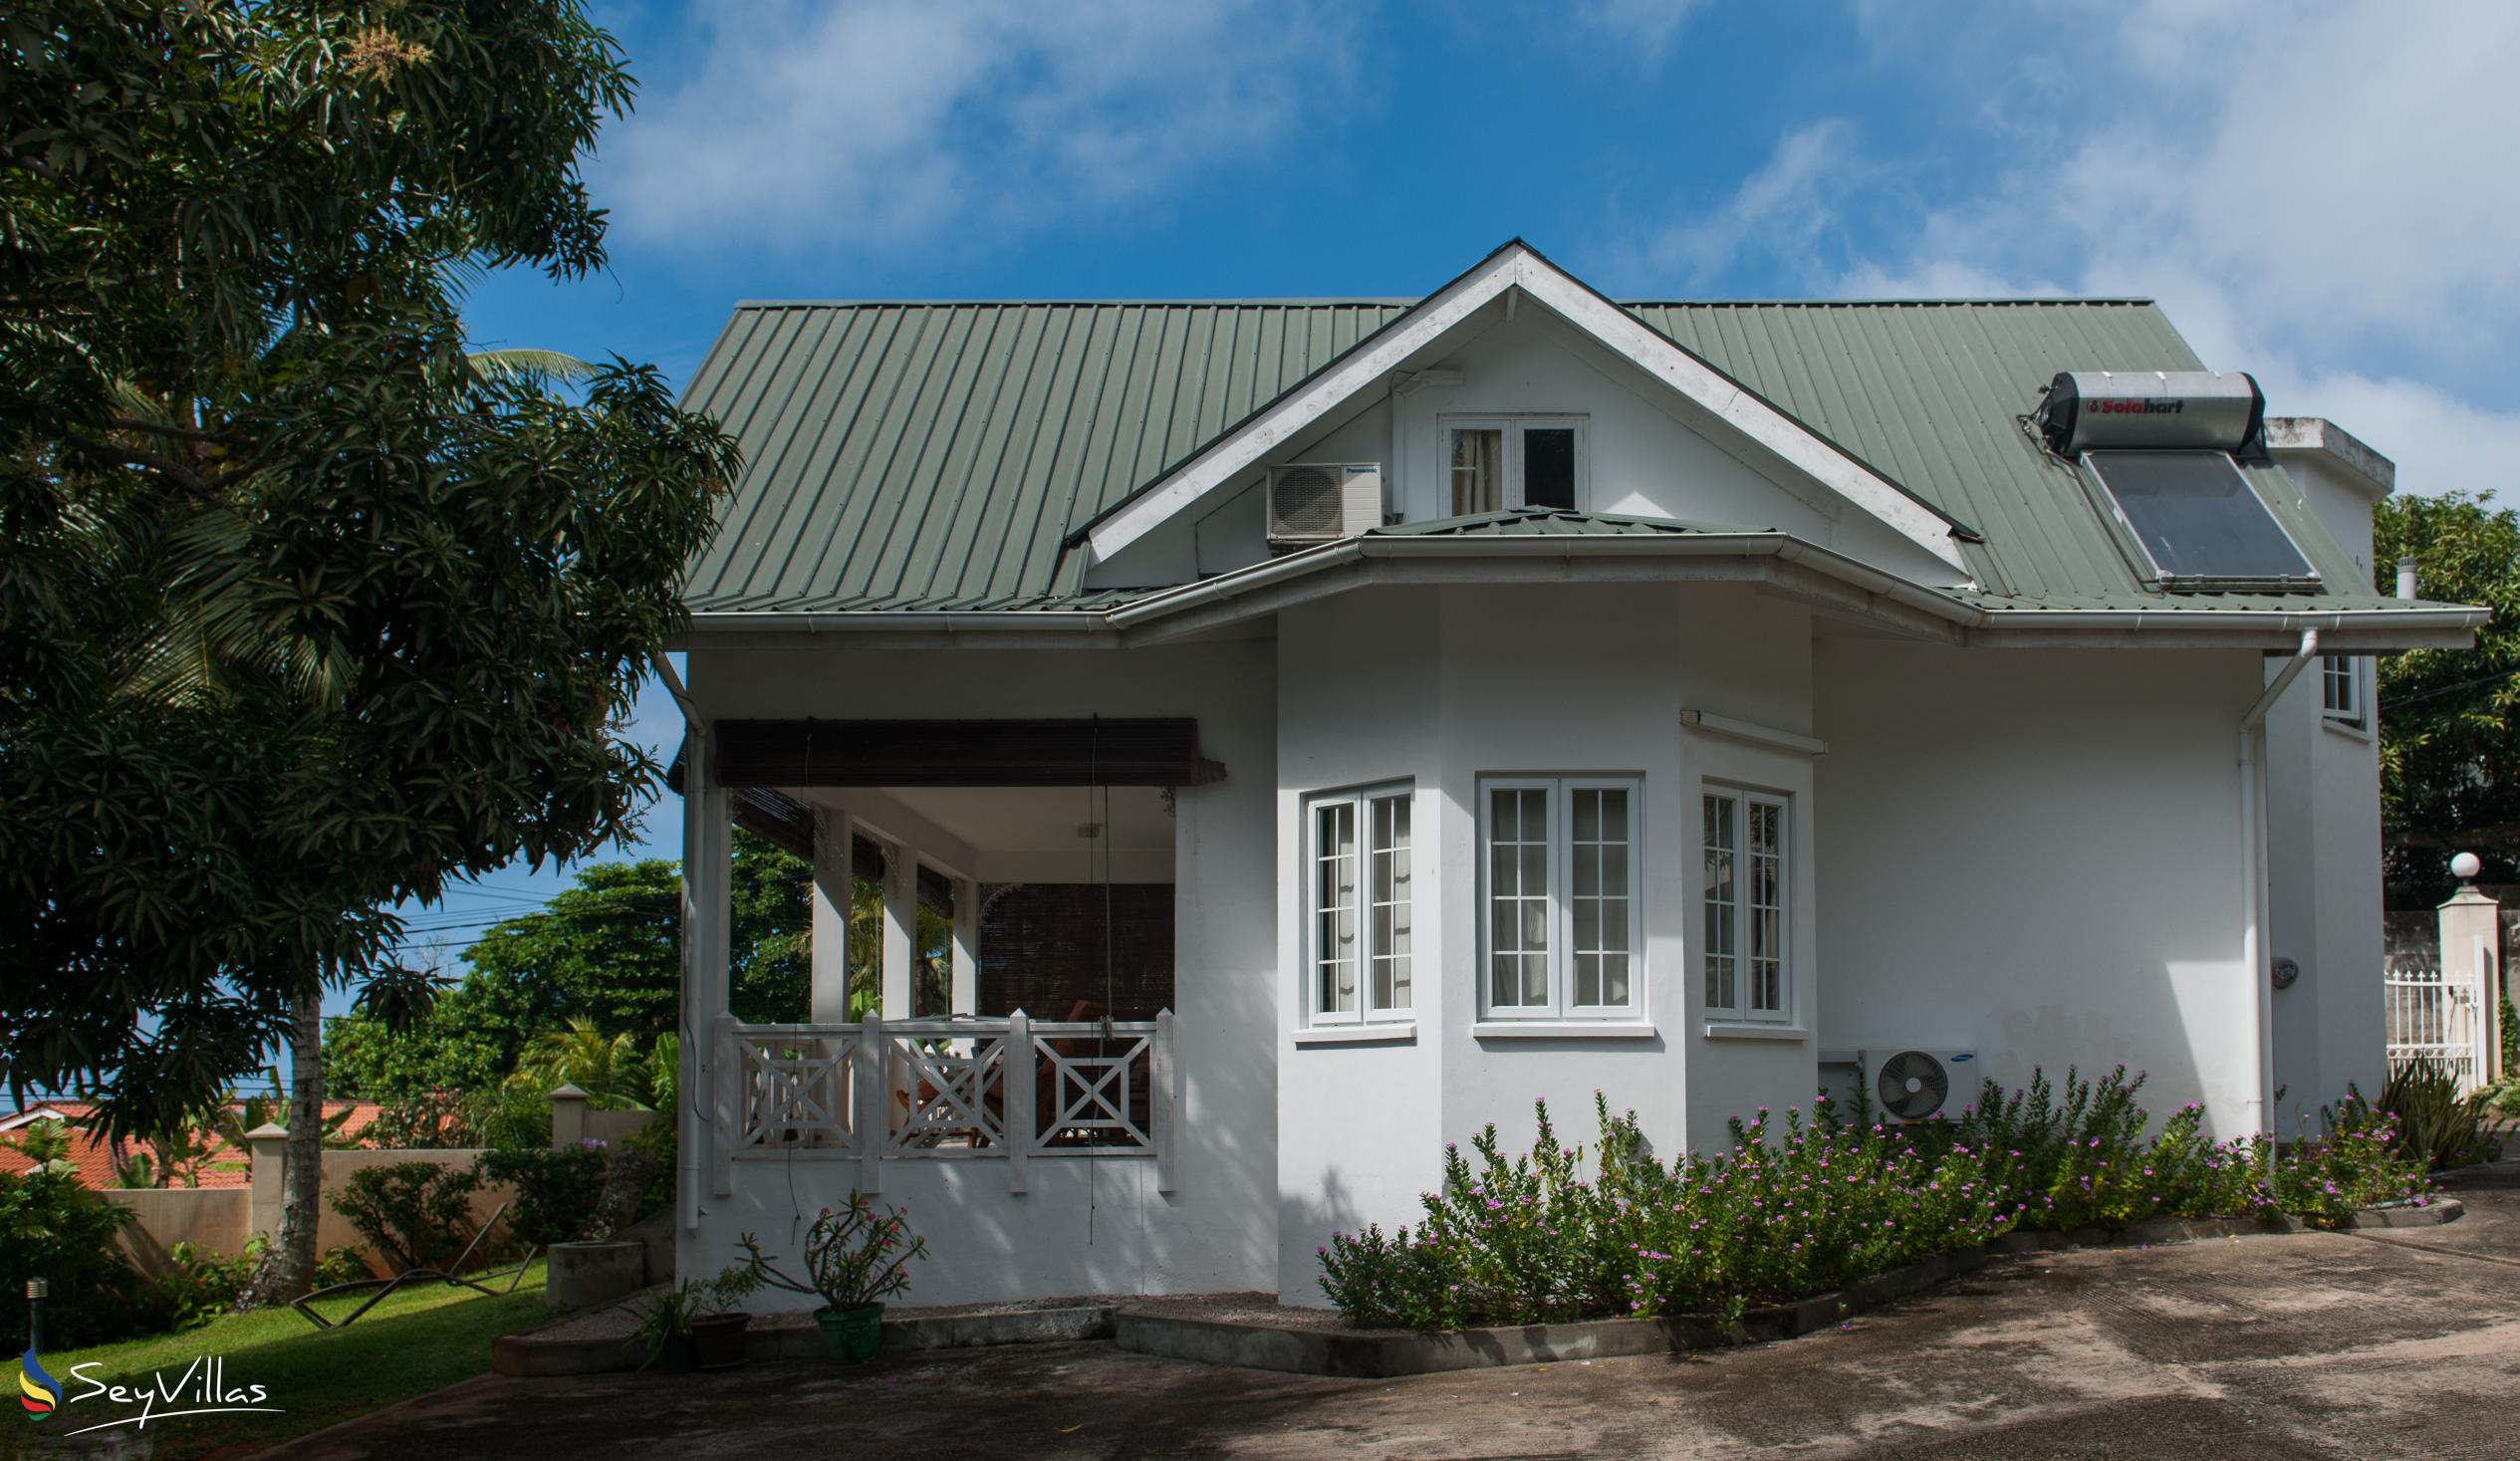 Foto 16: Le Domaine de Bacova - Extérieur - Mahé (Seychelles)